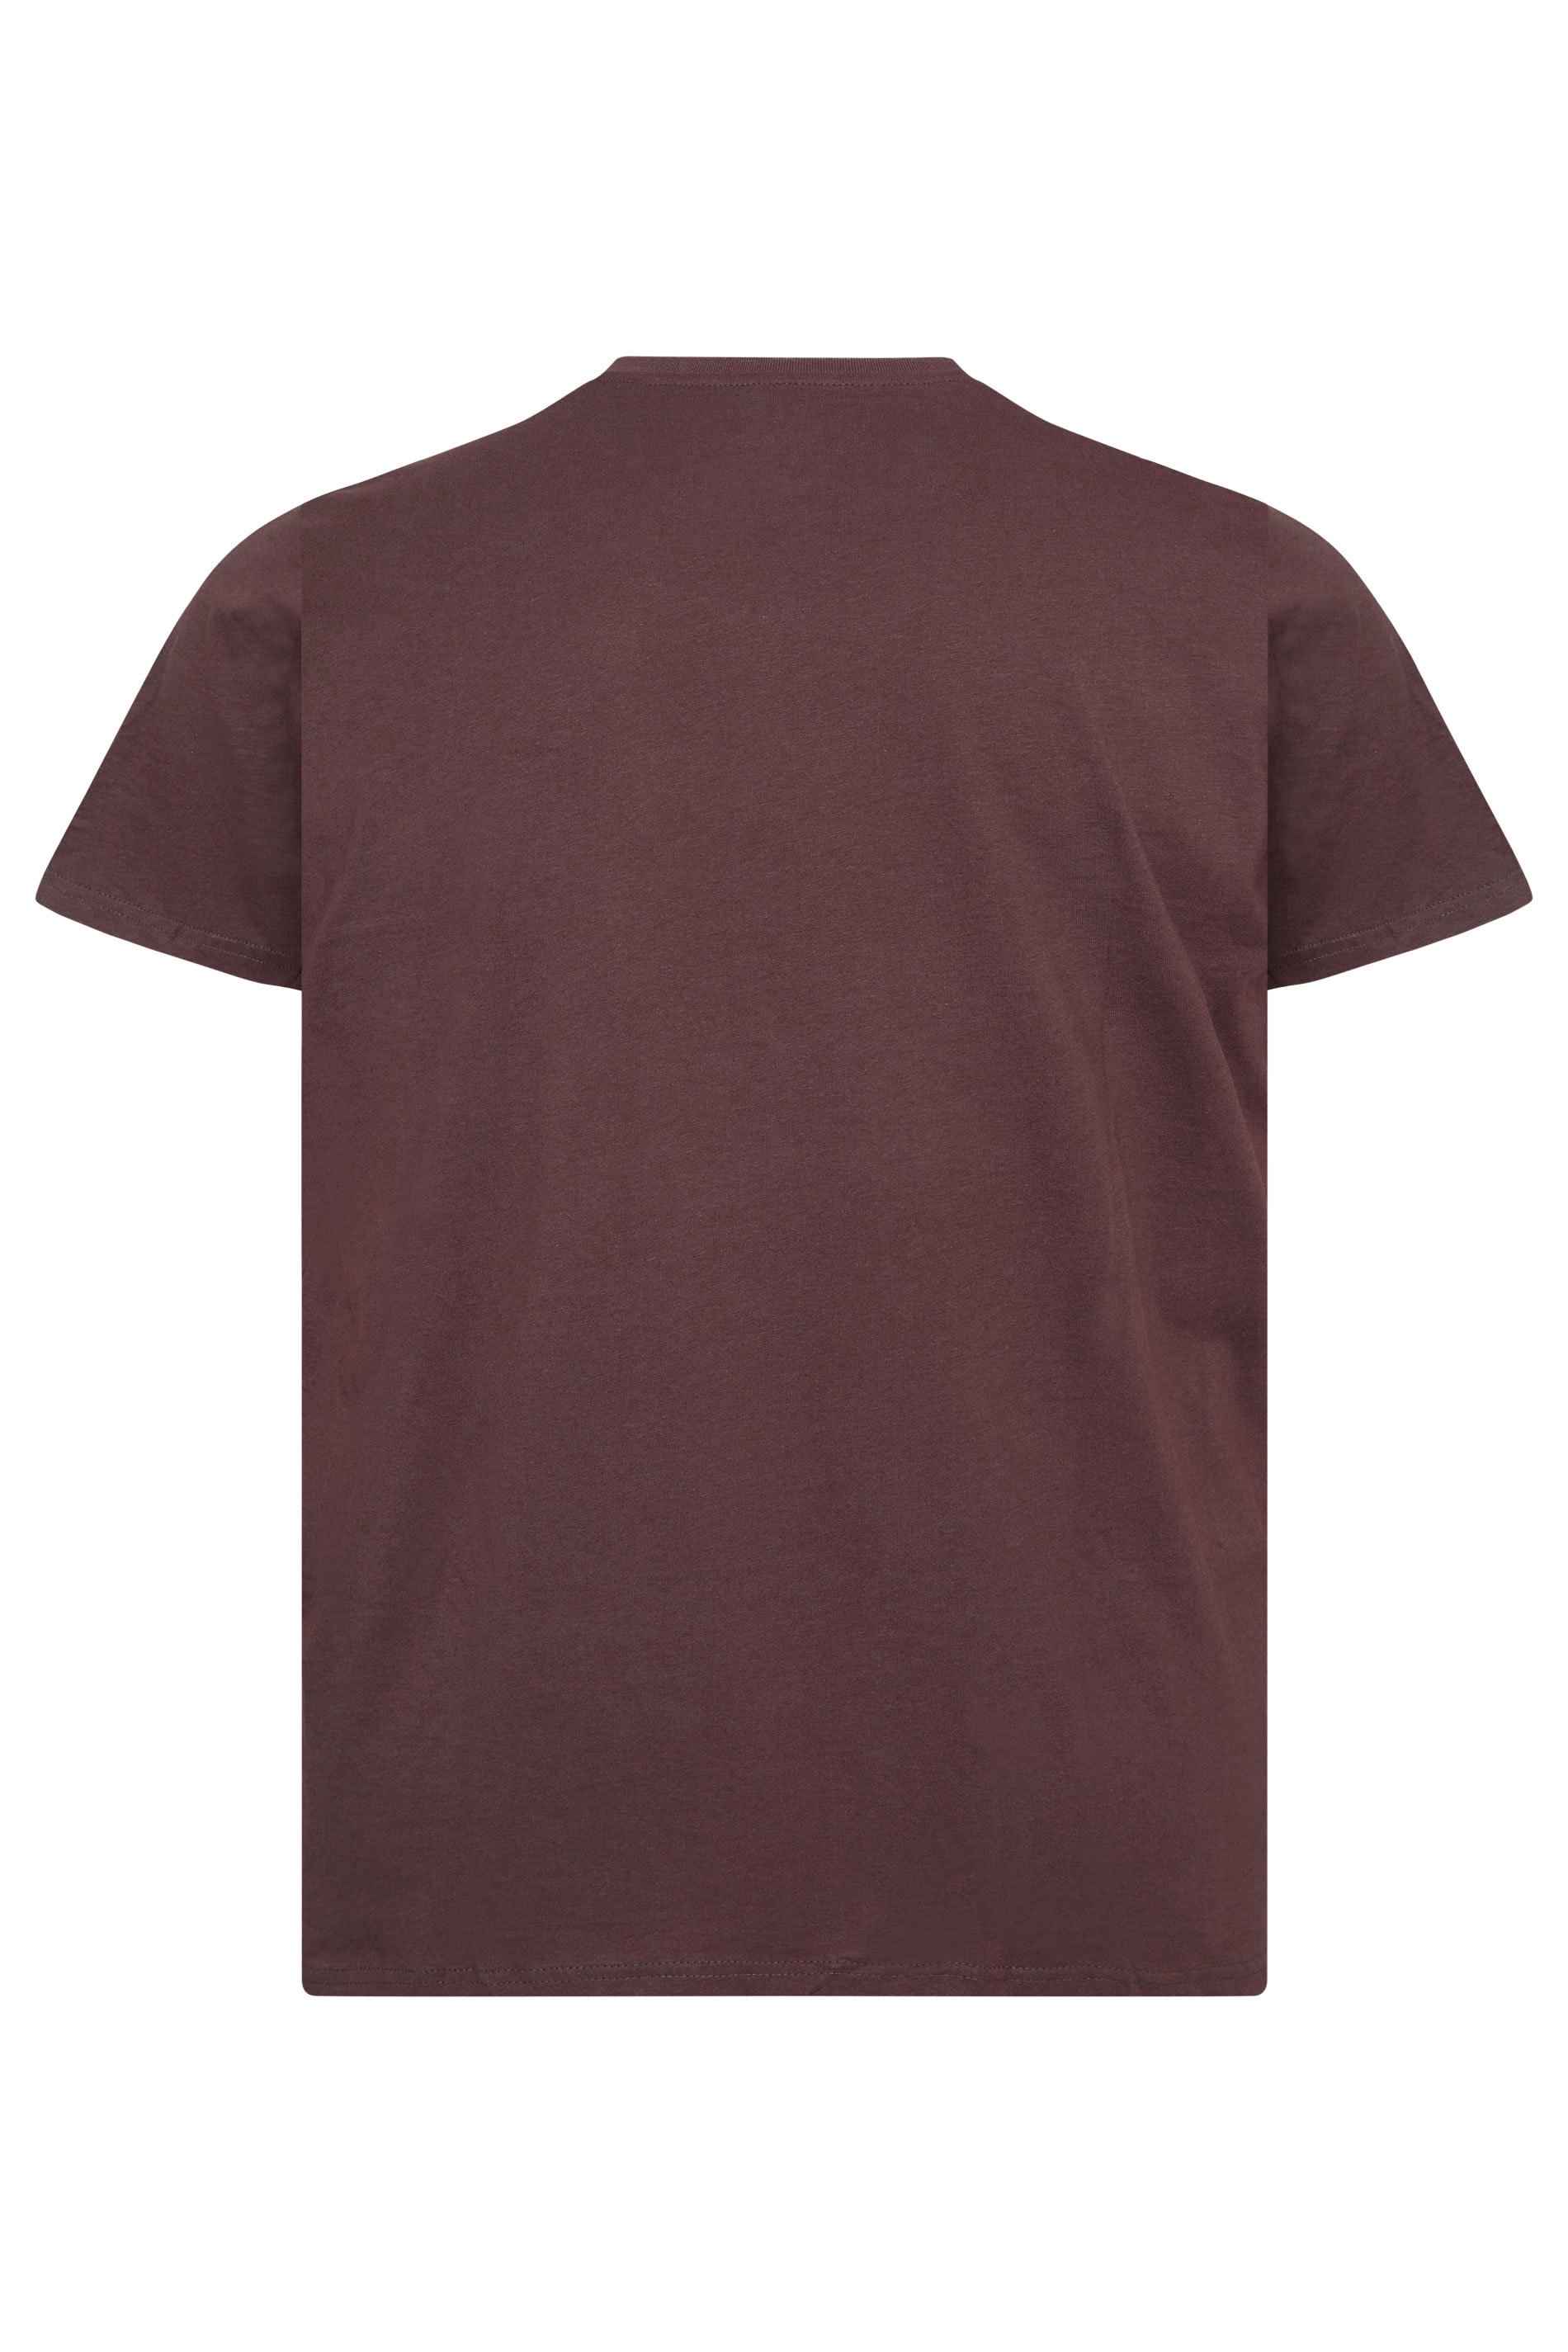 BadRhino Burgundy Red Plain T-Shirt ...